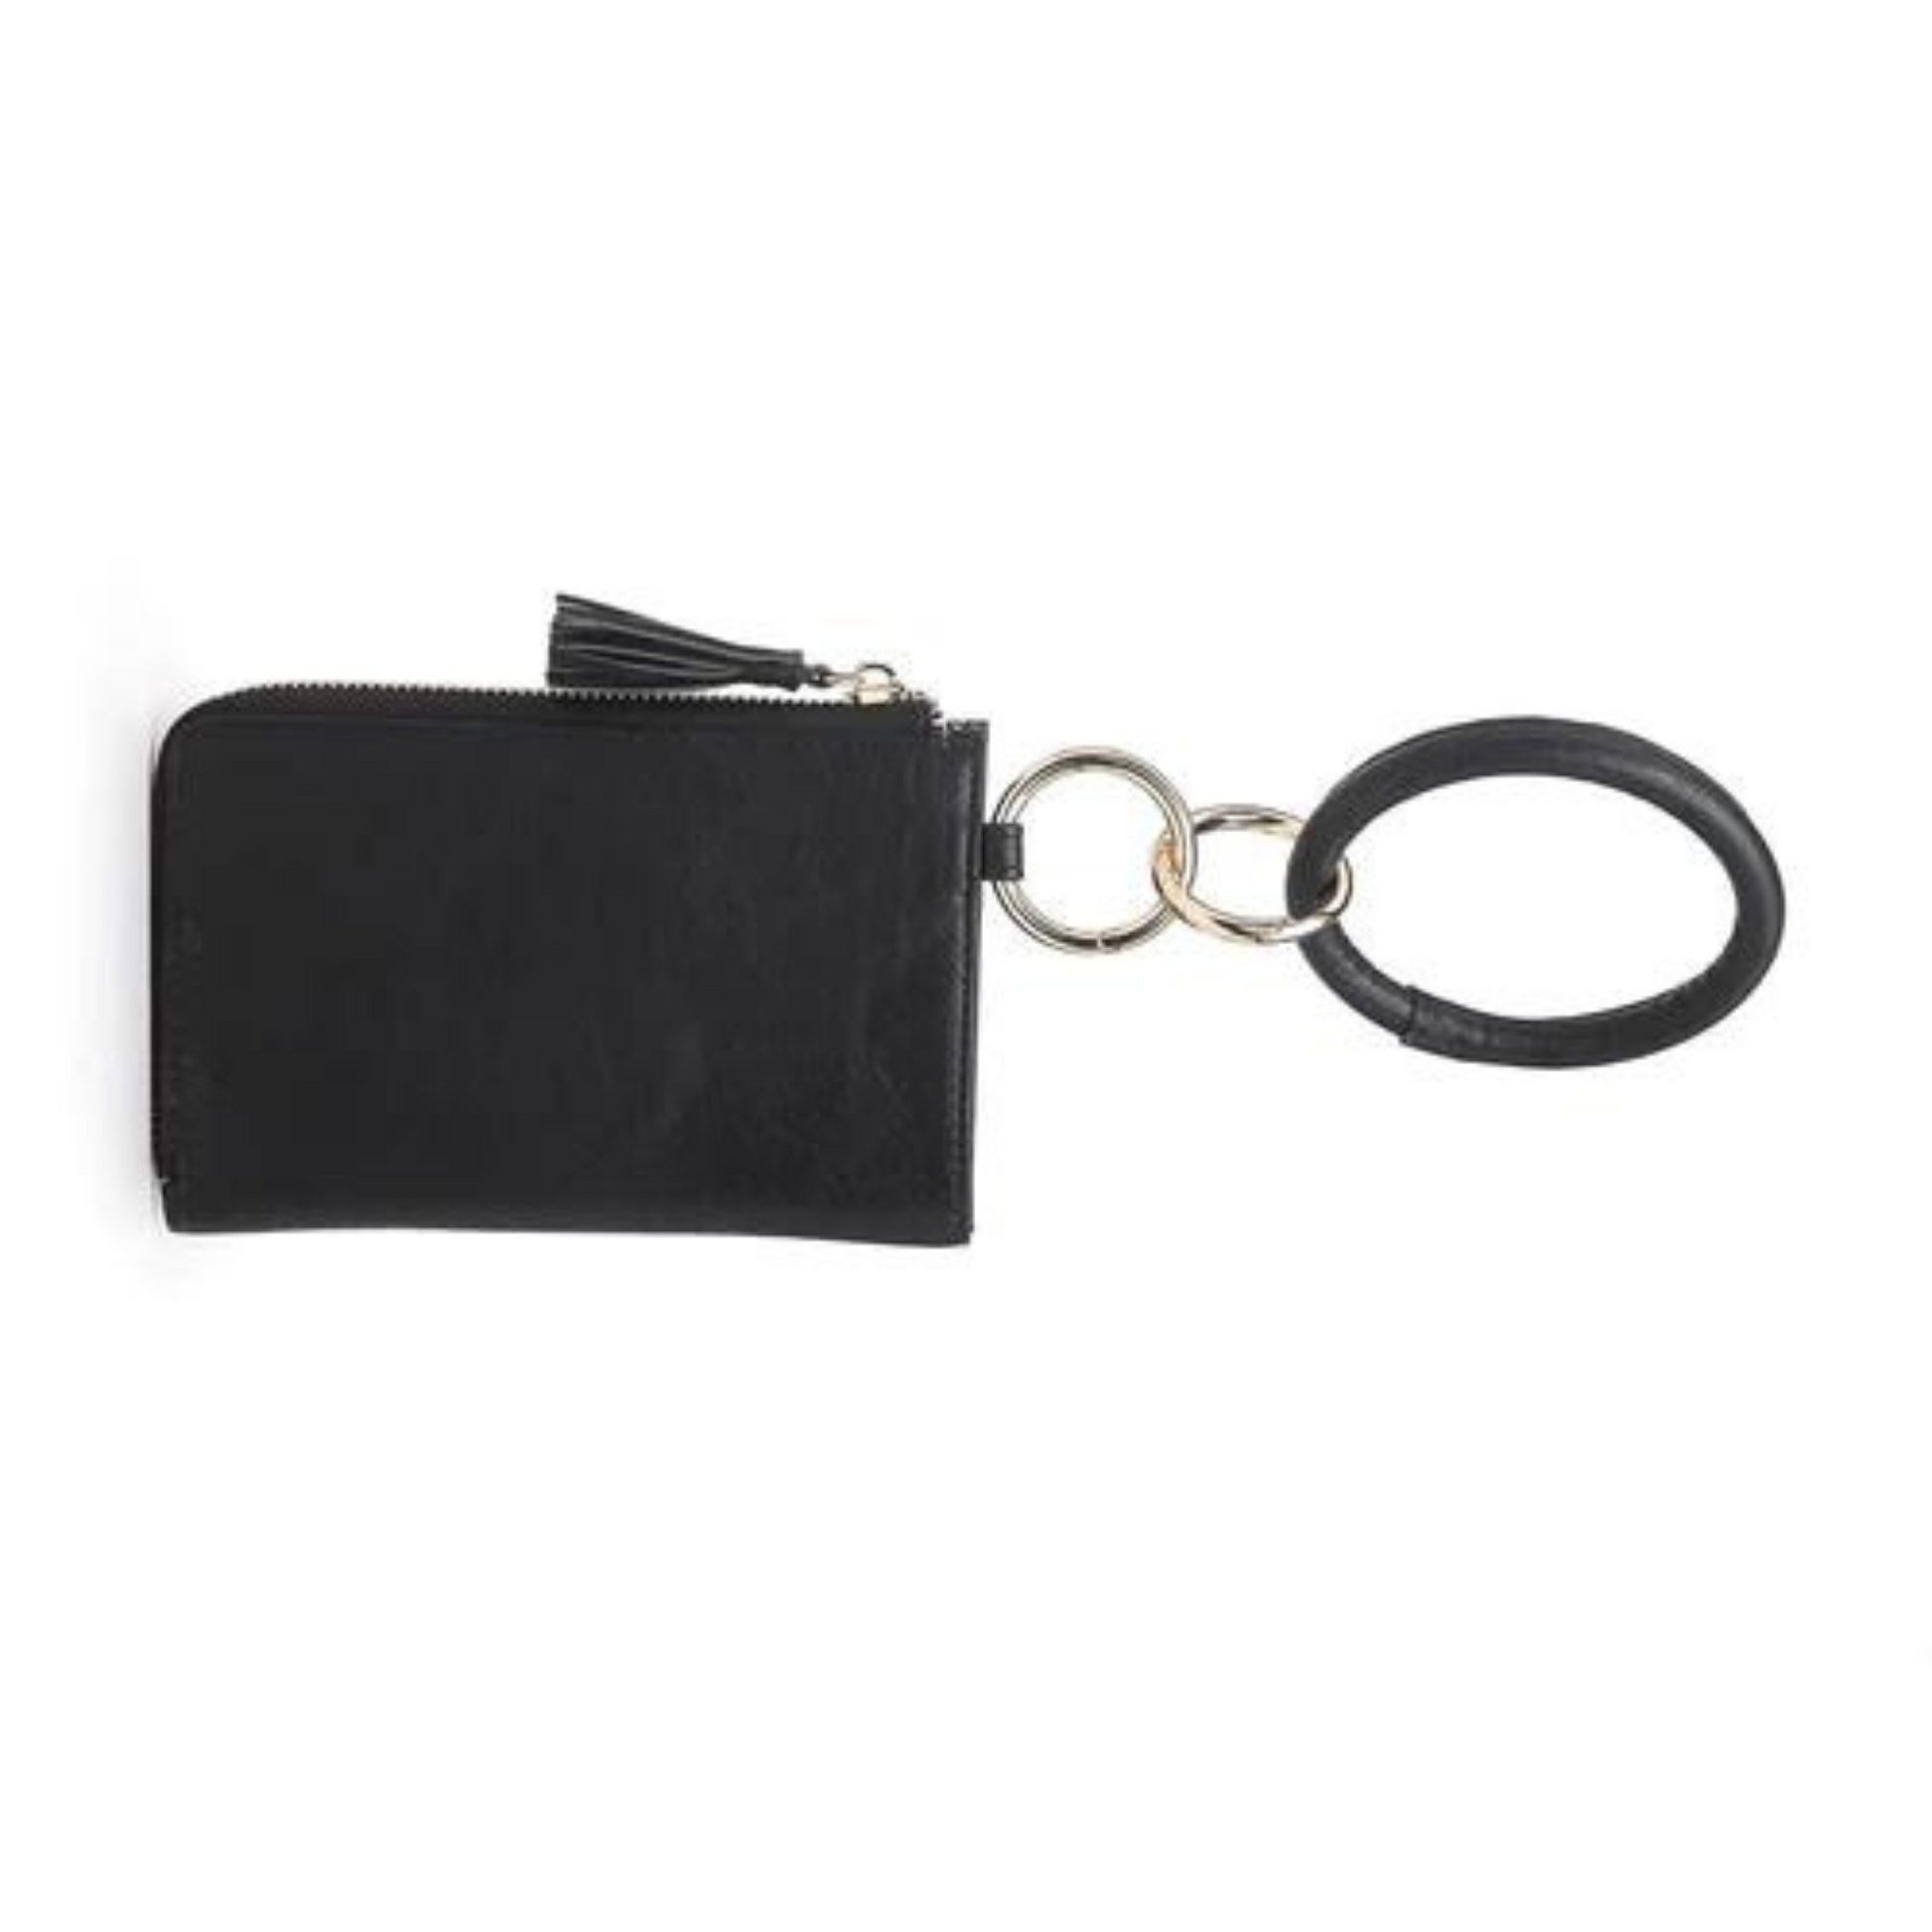 Black Wristlet Bangle Wallet from Jen & Co.